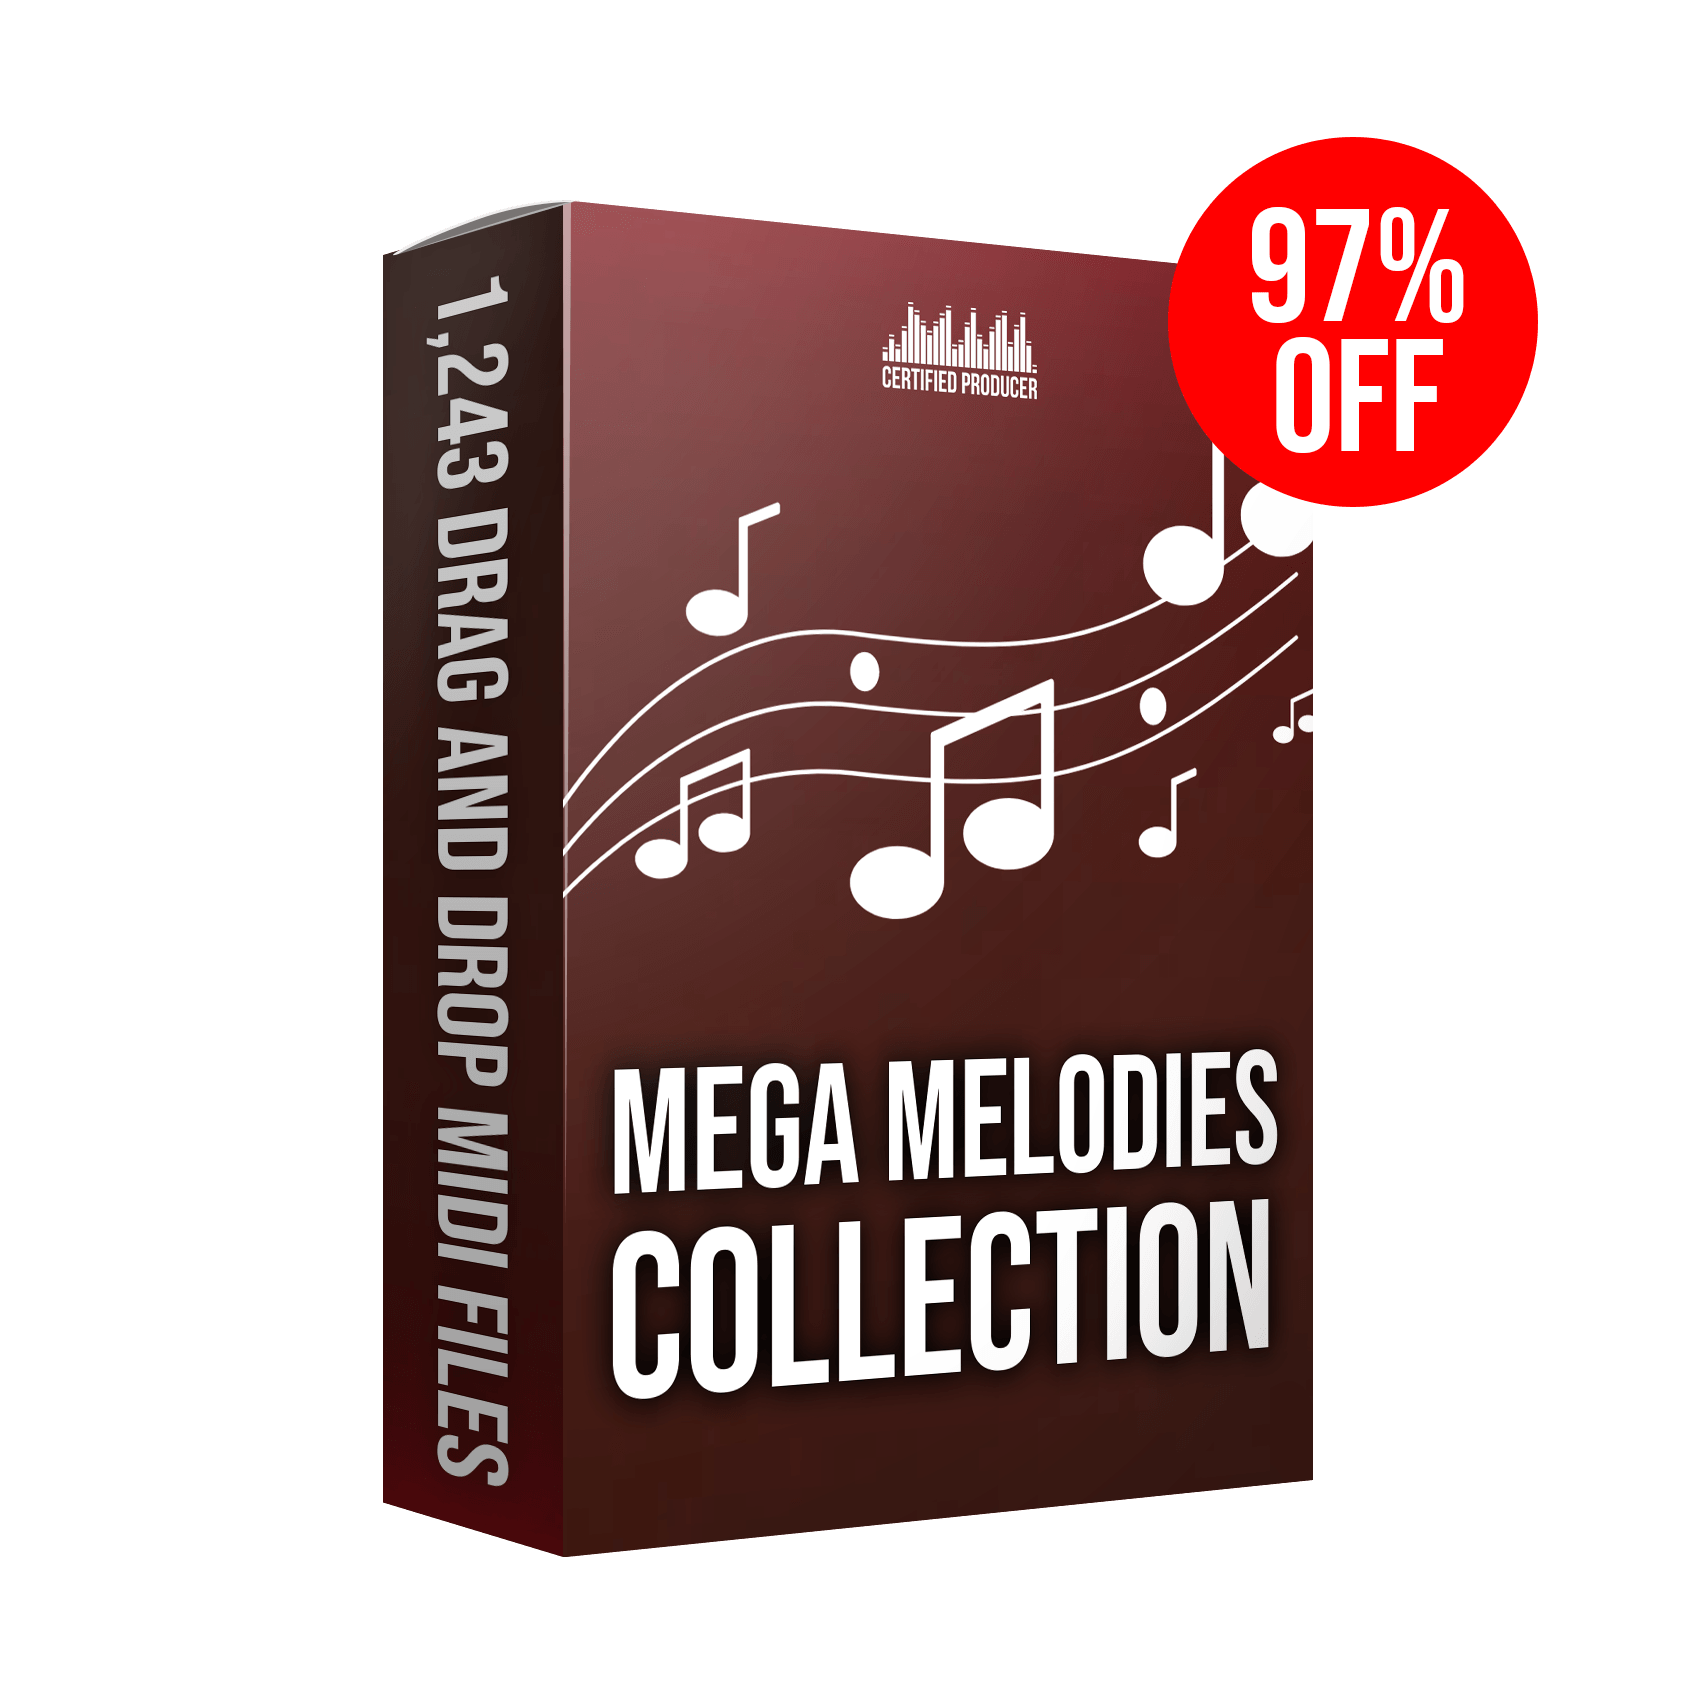 mega melodies (gigantic).png__PID:5752a407-317a-4e0c-a6b8-52ba5ba1194c